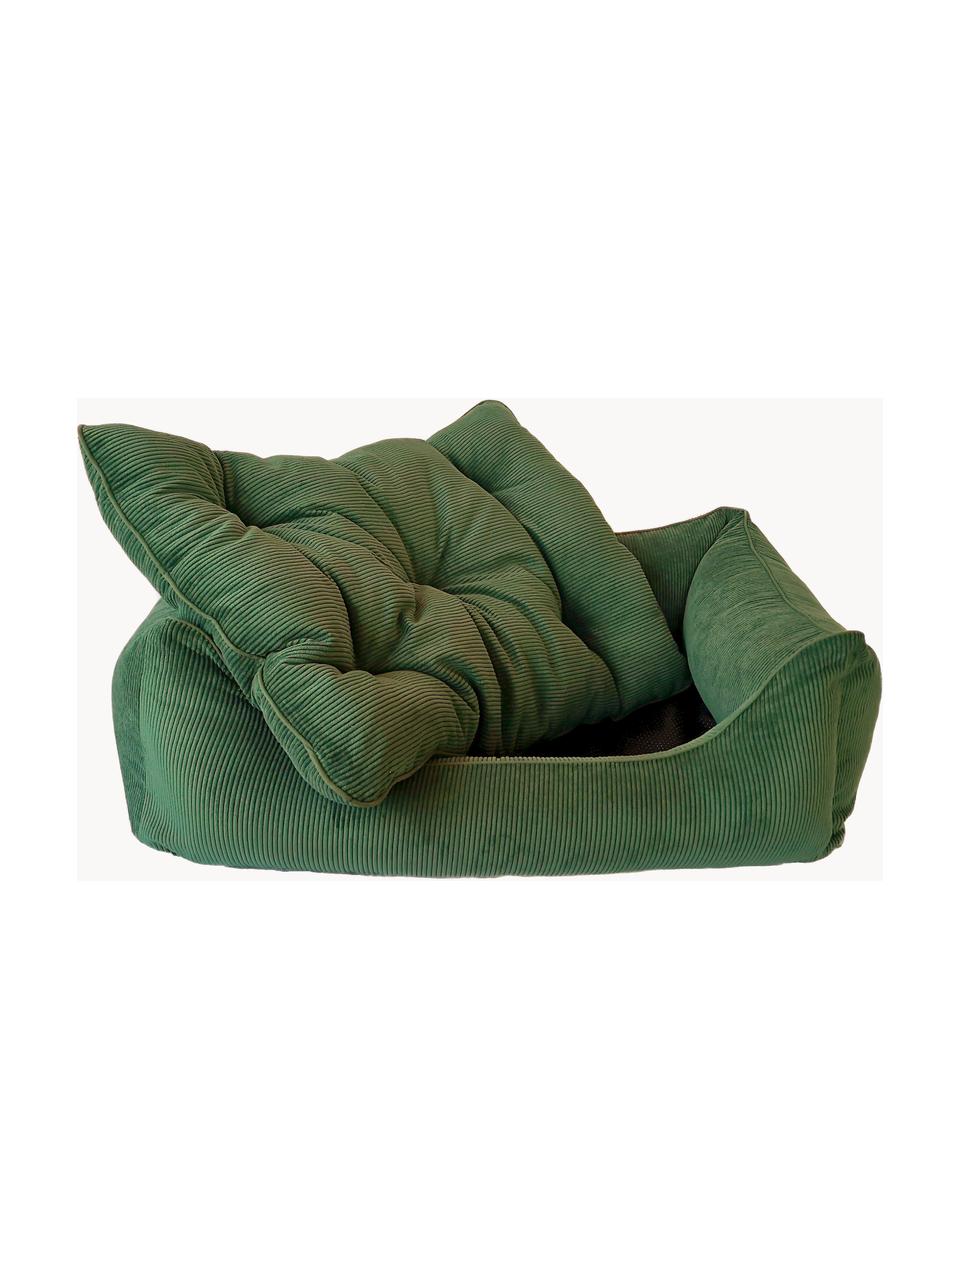 Cord-Hundebett Relax, verschiedene Größen, Bezug: Cord (100 % Polyester) De, Dunkelgrün, B 90 x T 60 cm